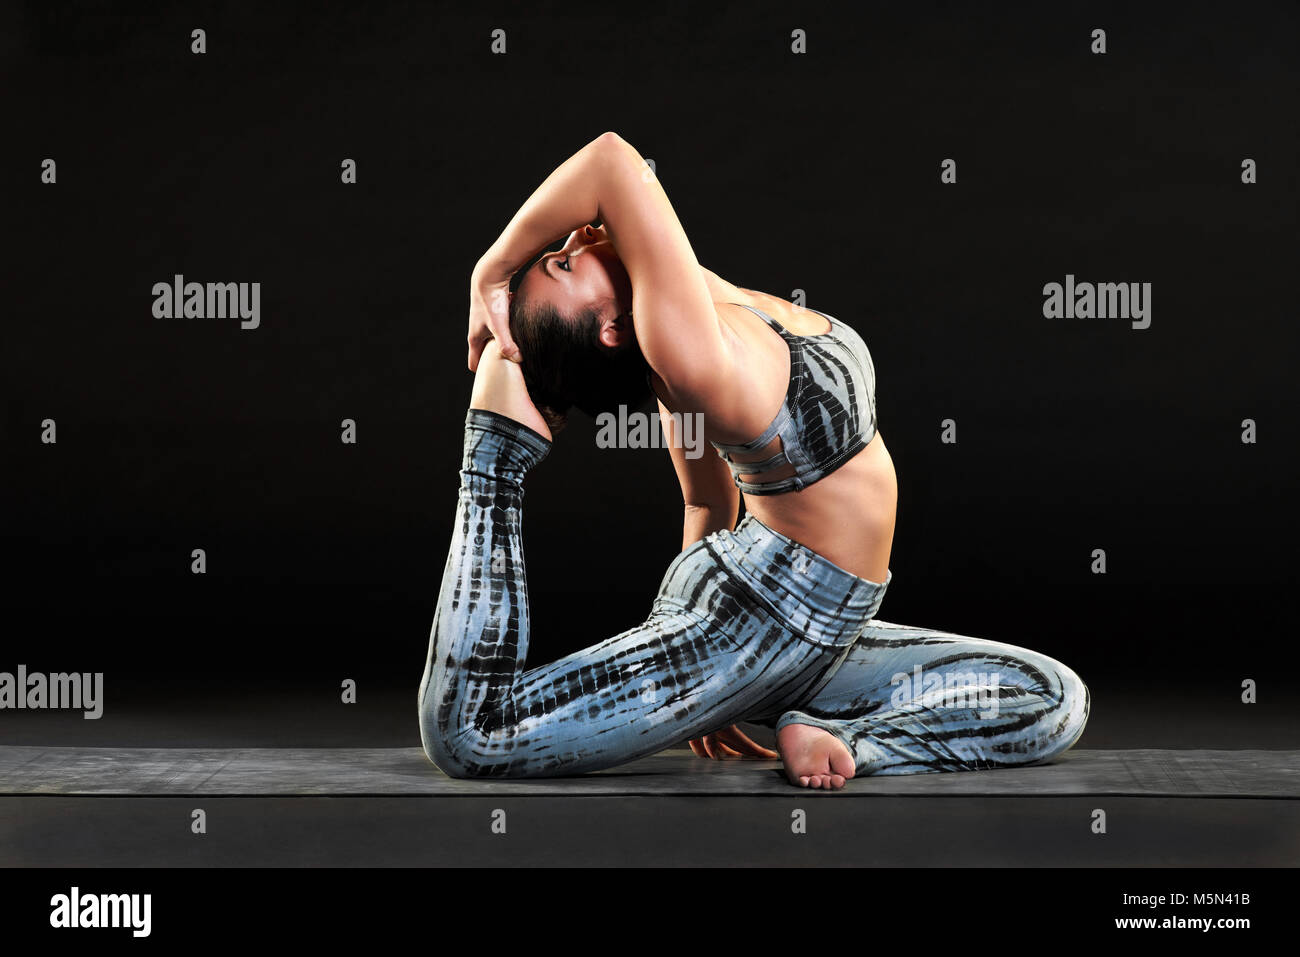 Montare morbida donna facendo un re pigeon yoga pongono inarcamento torna ad abbracciare il suo piede in una vista laterale su uno sfondo nero Foto Stock